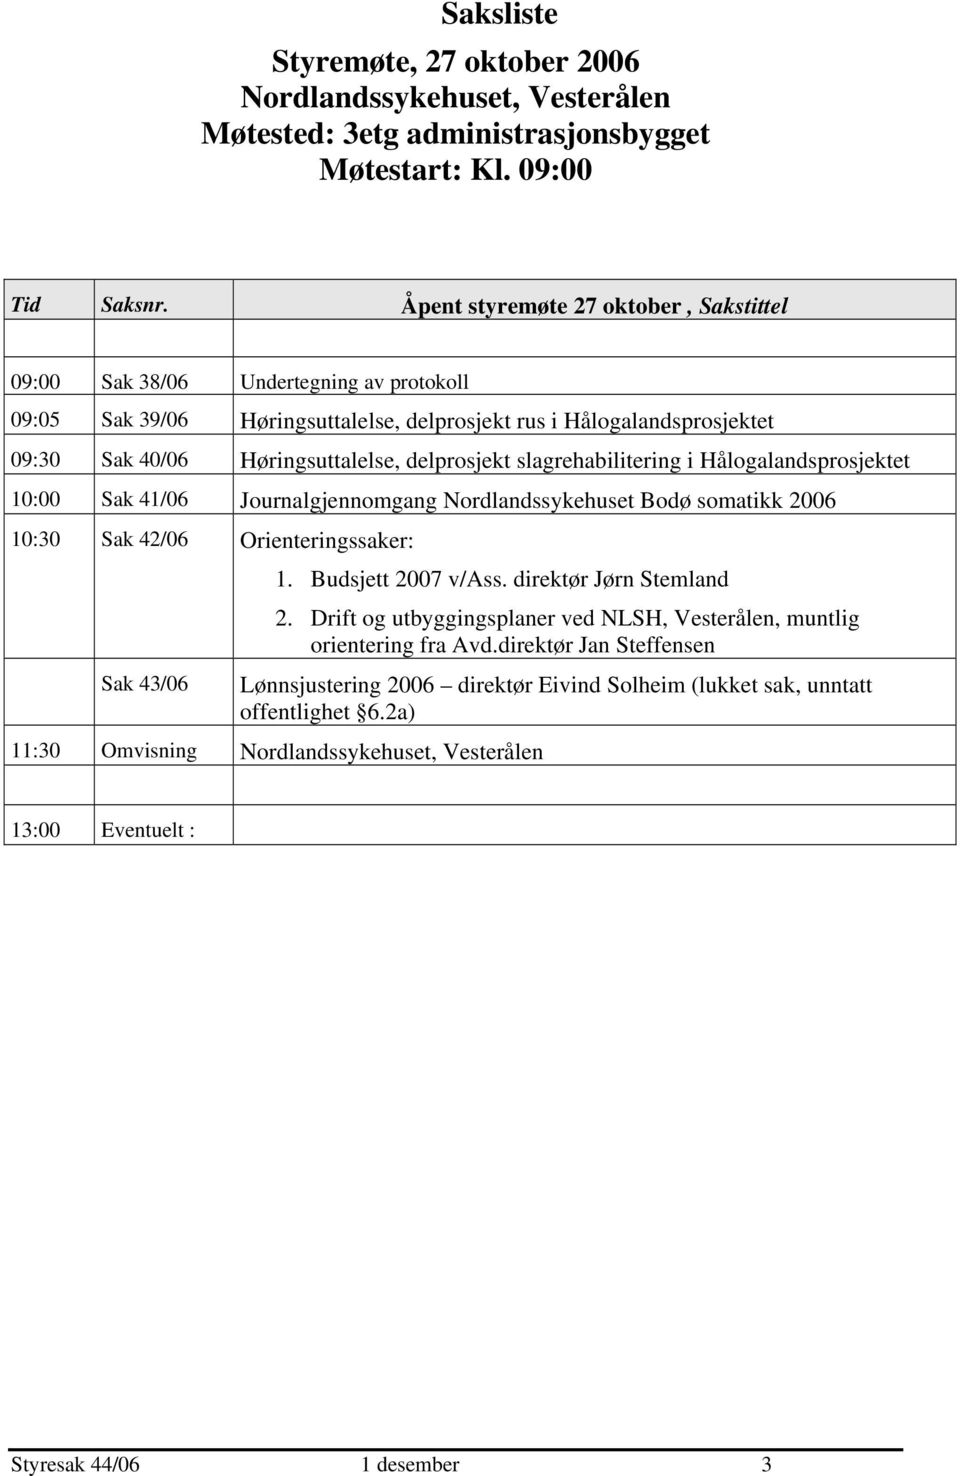 delprosjekt slagrehabilitering i Hålogalandsprosjektet 10:00 Sak 41/06 Journalgjennomgang Nordlandssykehuset Bodø somatikk 2006 10:30 Sak 42/06 Orienteringssaker: 1. Budsjett 2007 v/ass.